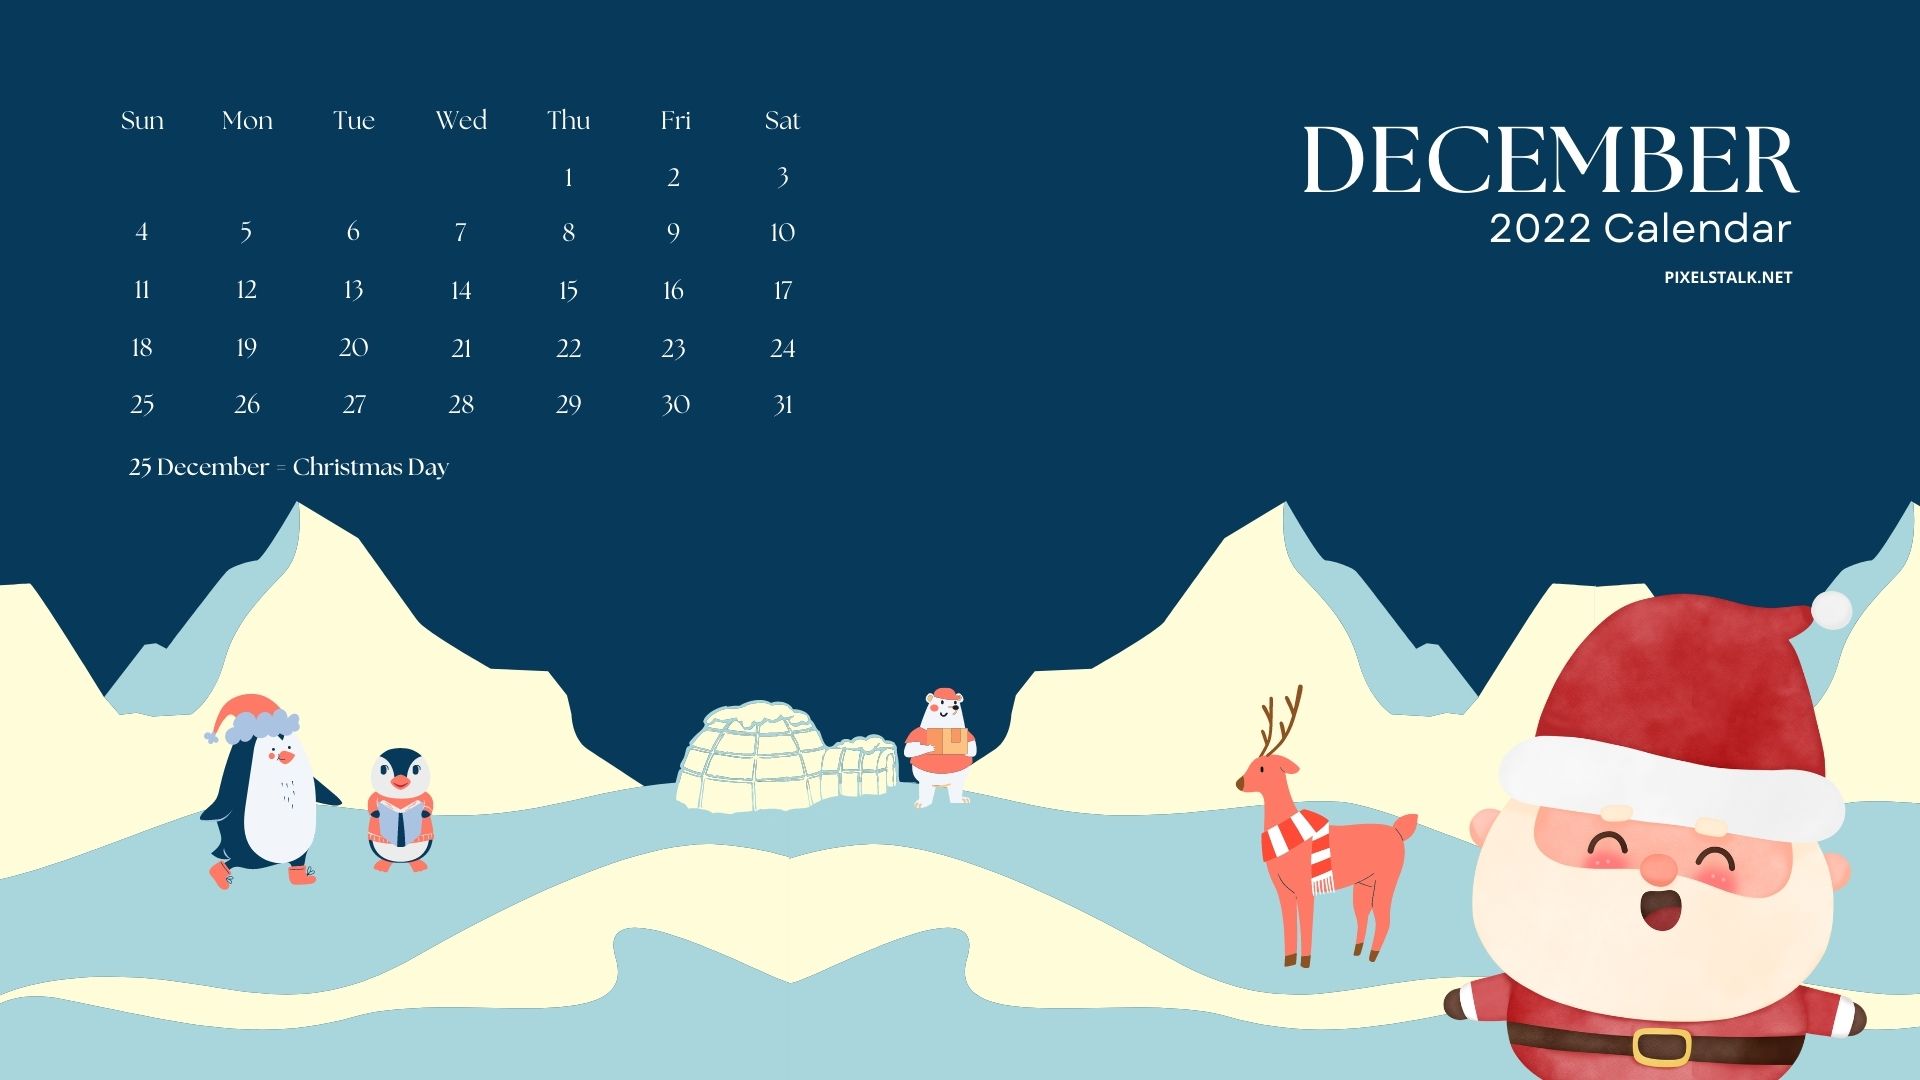 Một hình nền lịch tháng Mười Hai 2022 chất lượng cao sẽ giúp bạn tạo nên vẻ đẹp rực rỡ cho màn hình máy tính của mình. Hãy chọn cho mình một trong những hình ảnh đẹp nhất để cùng chào đón một mùa Giáng Sinh tràn đầy niềm vui và hạnh phúc.